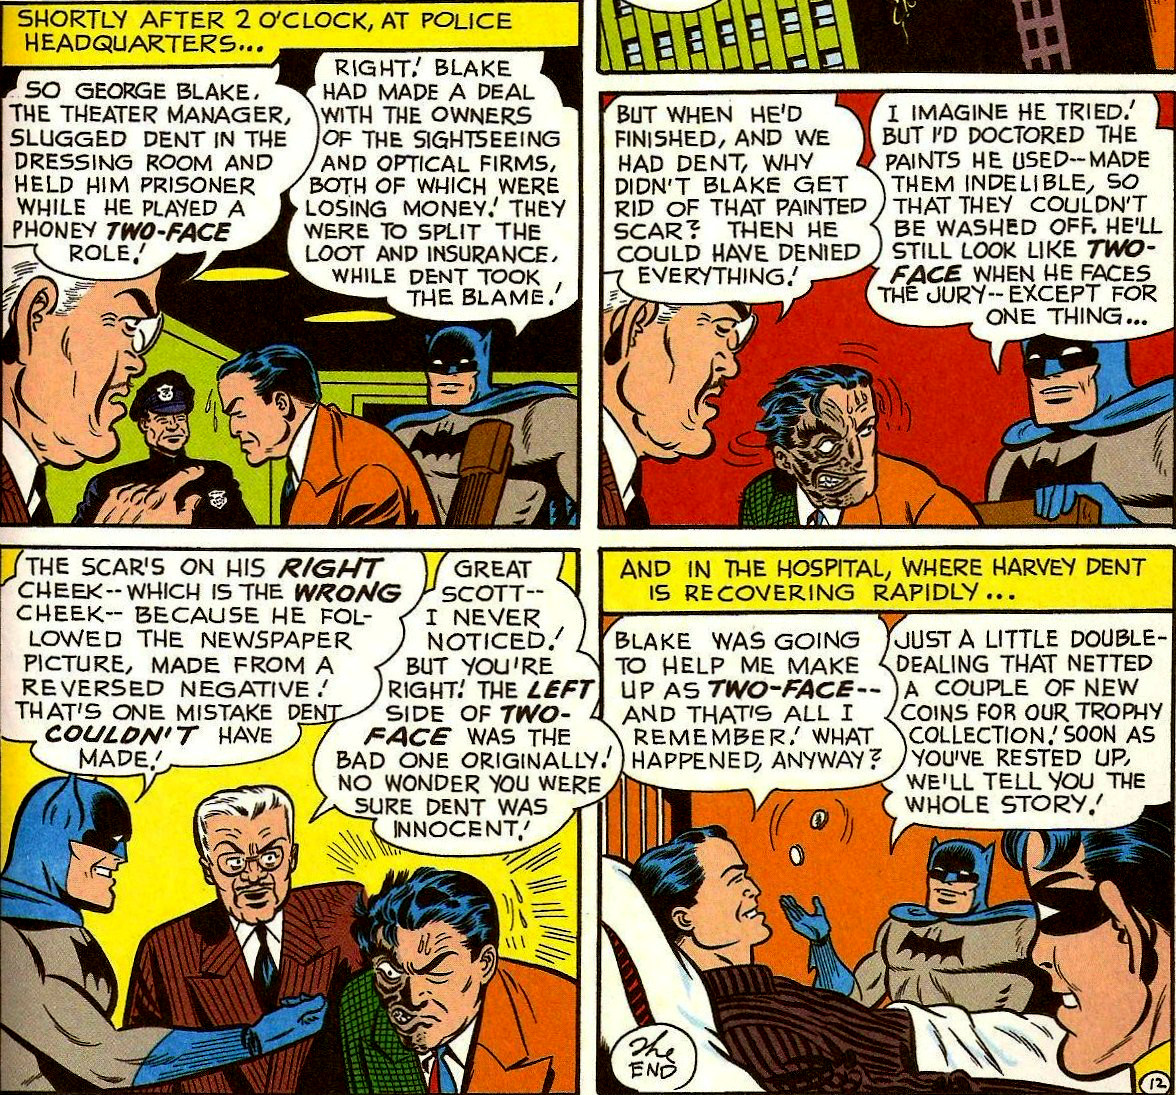 From Detective Comics (Vol. 1) #187 (1952)